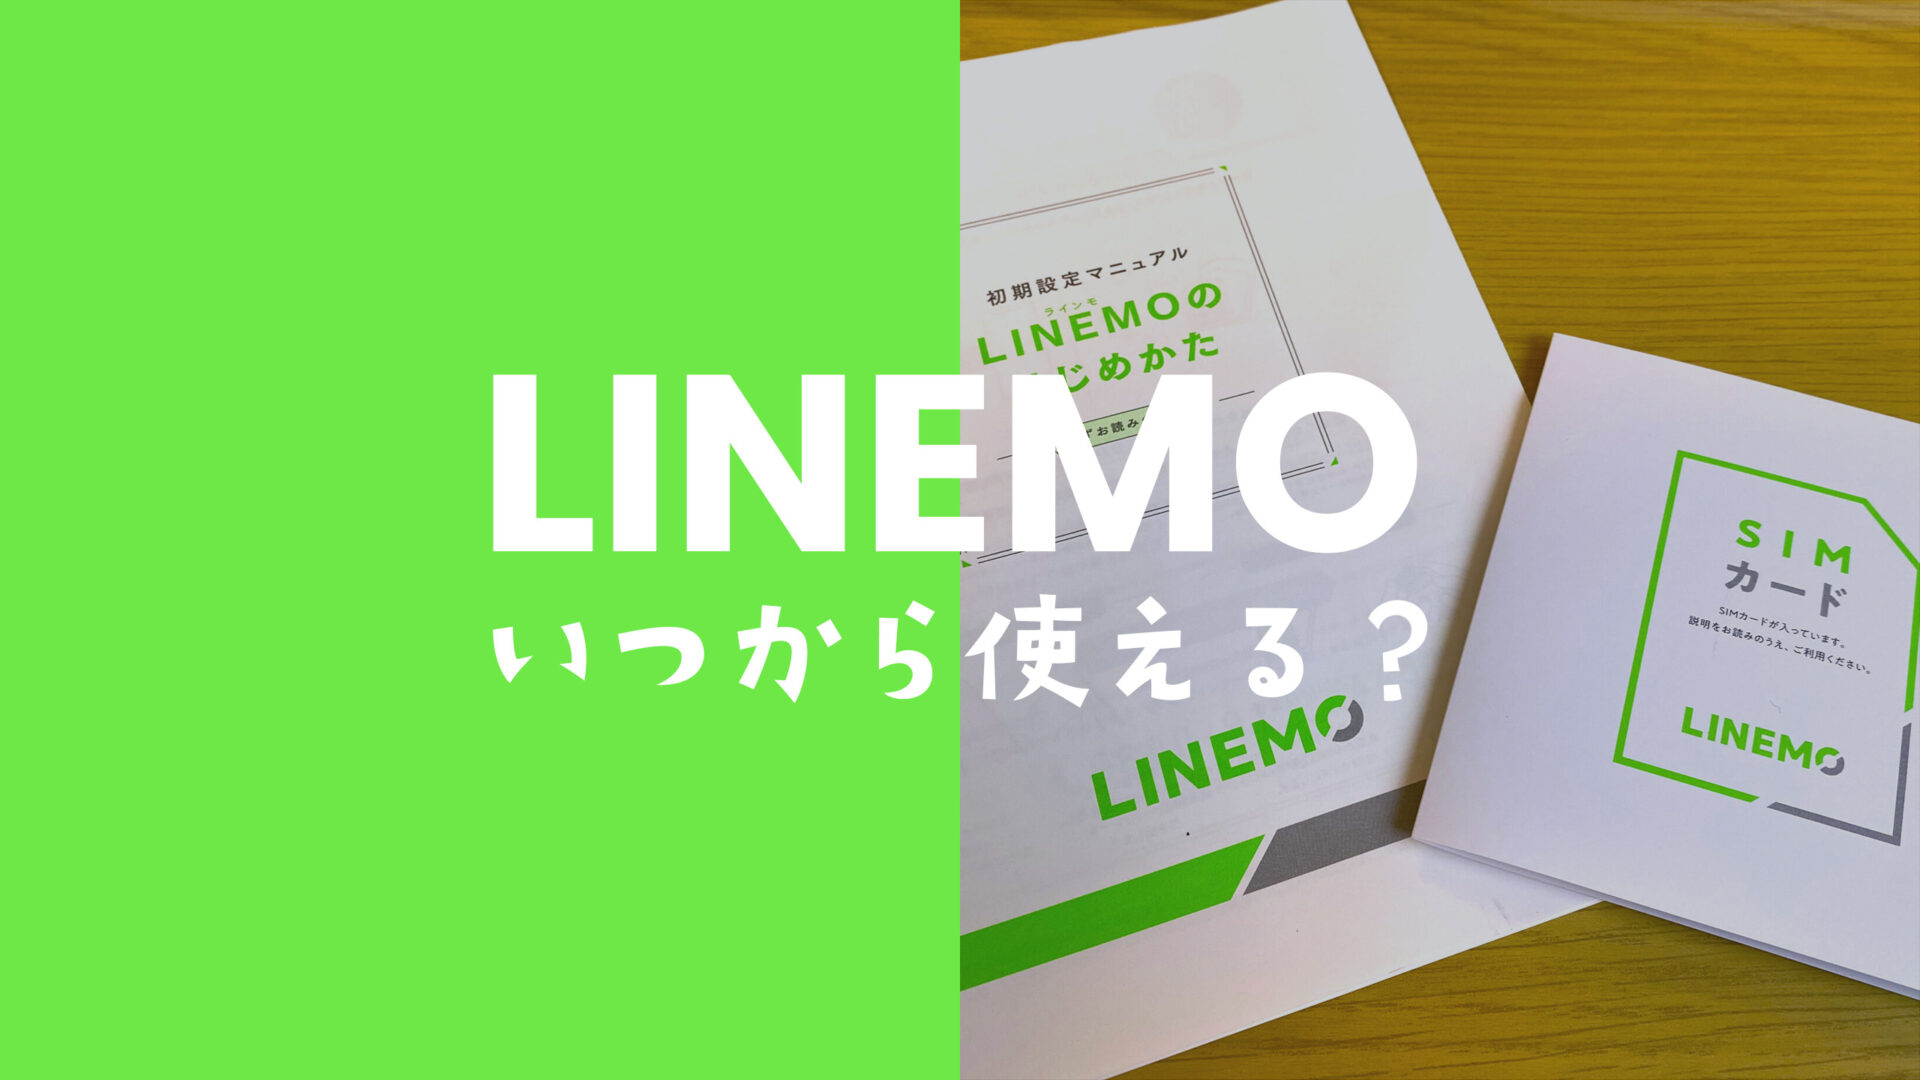 LINEMO(ラインモ)を契約したらいつから使えるのか？解説。のサムネイル画像